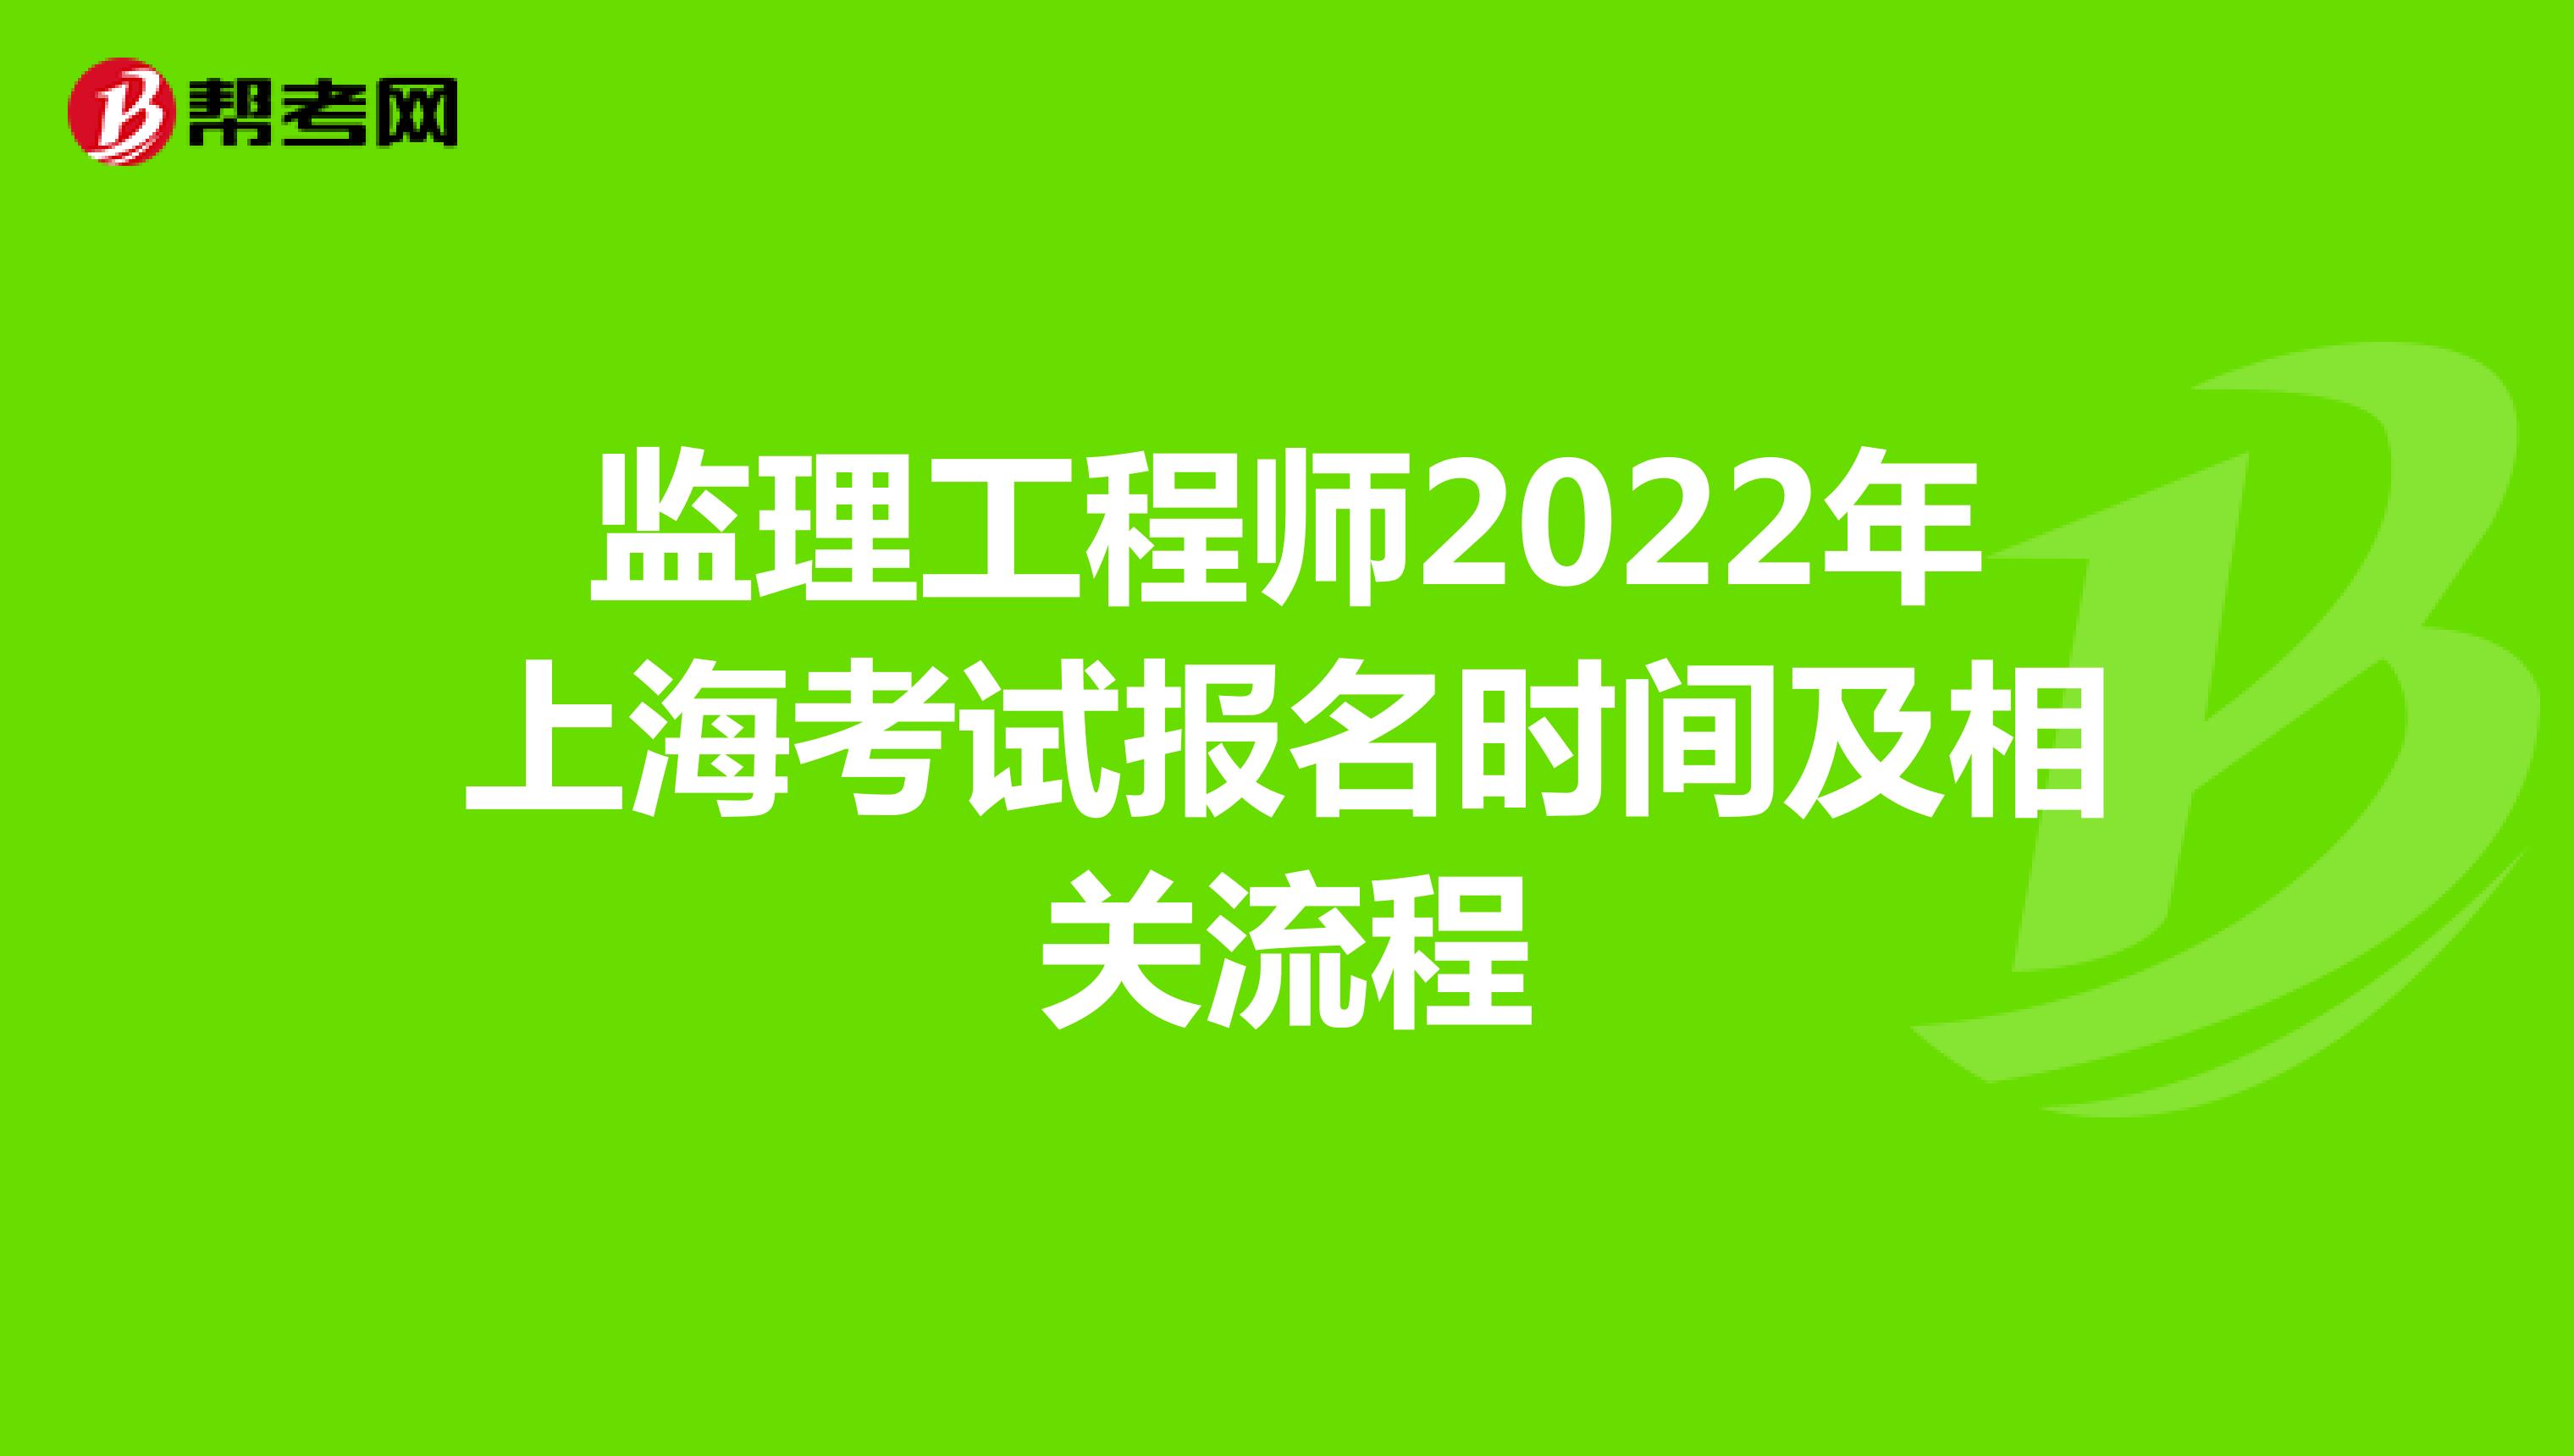 监理工程师2022年上海考试报名时间及相关流程